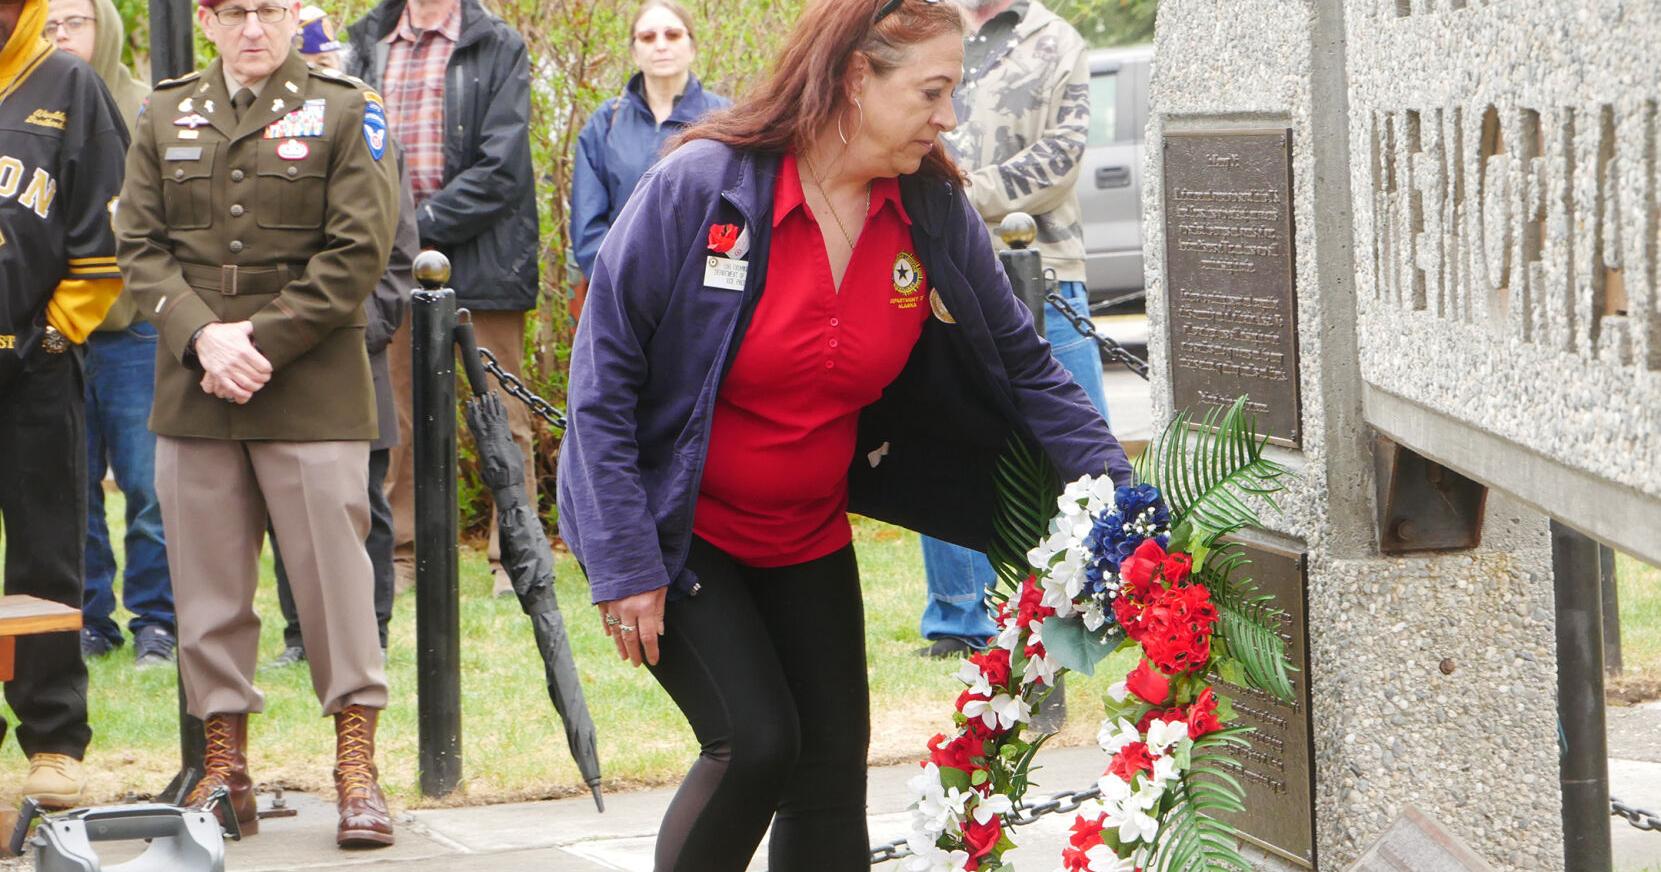 Fairbanks honors fallen military members on Memorial Day